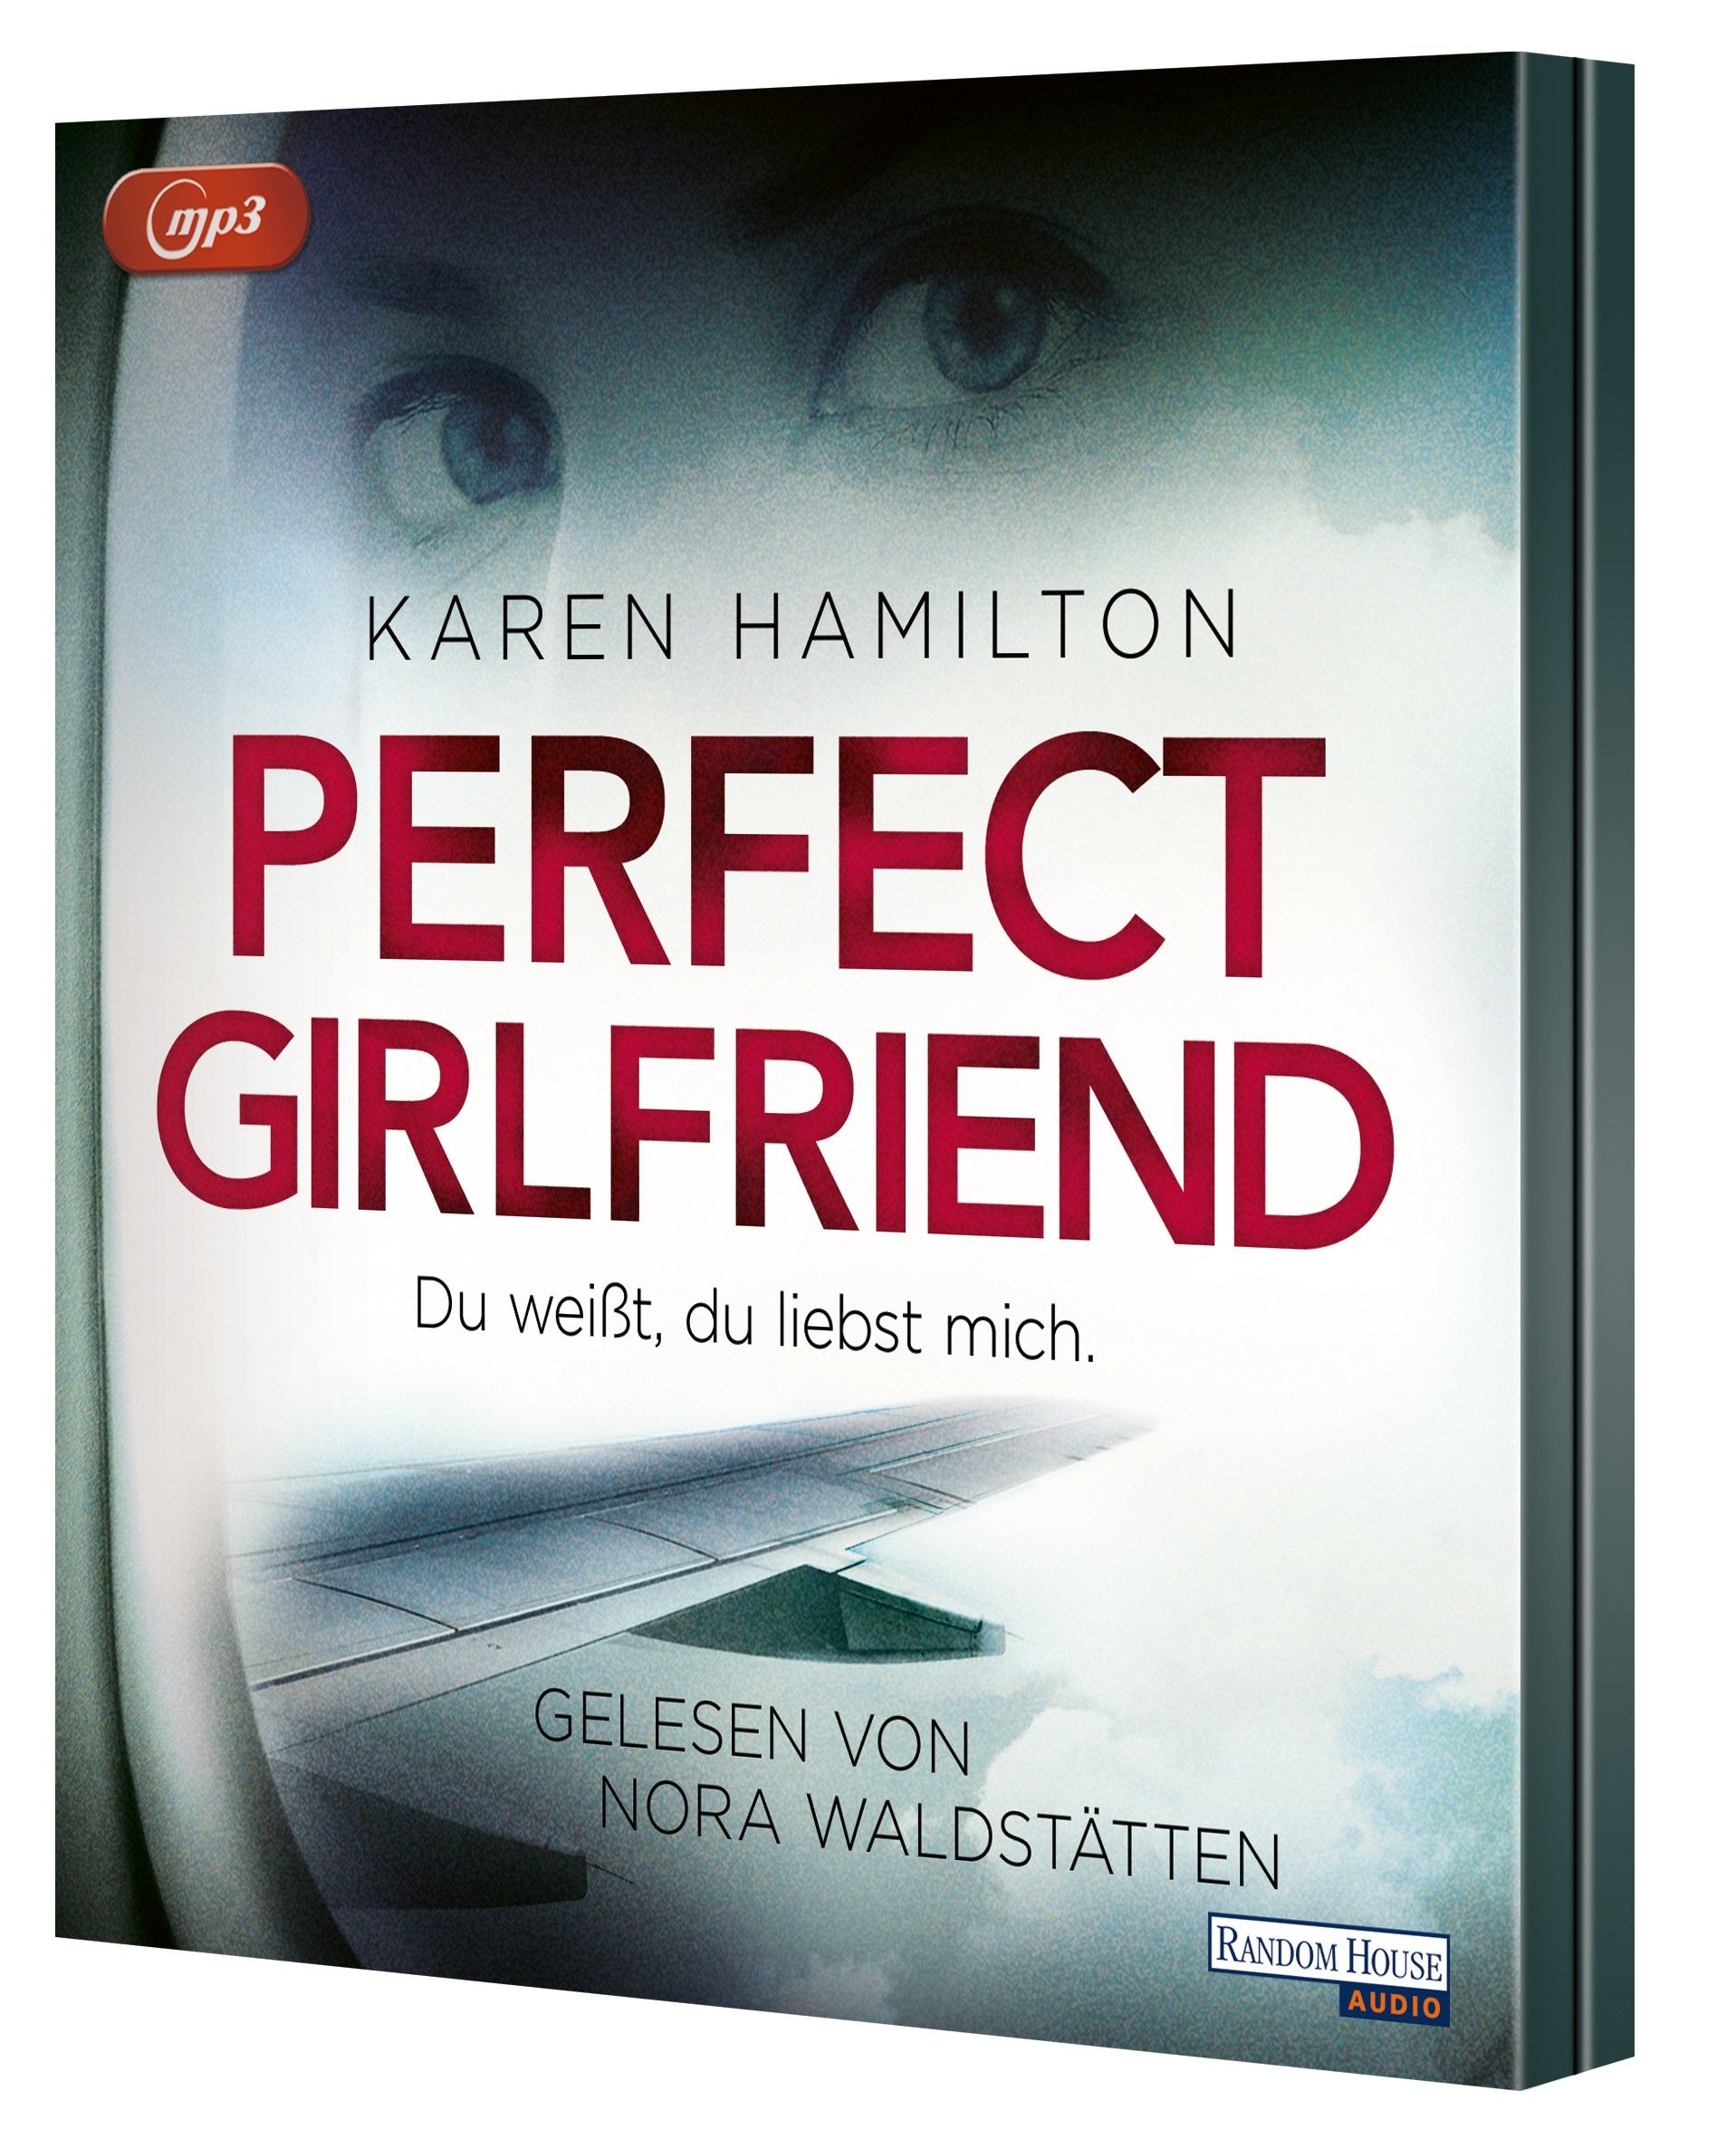 Perfect Girlfriend - Du weißt, du liebst mich. (Audio-CD)